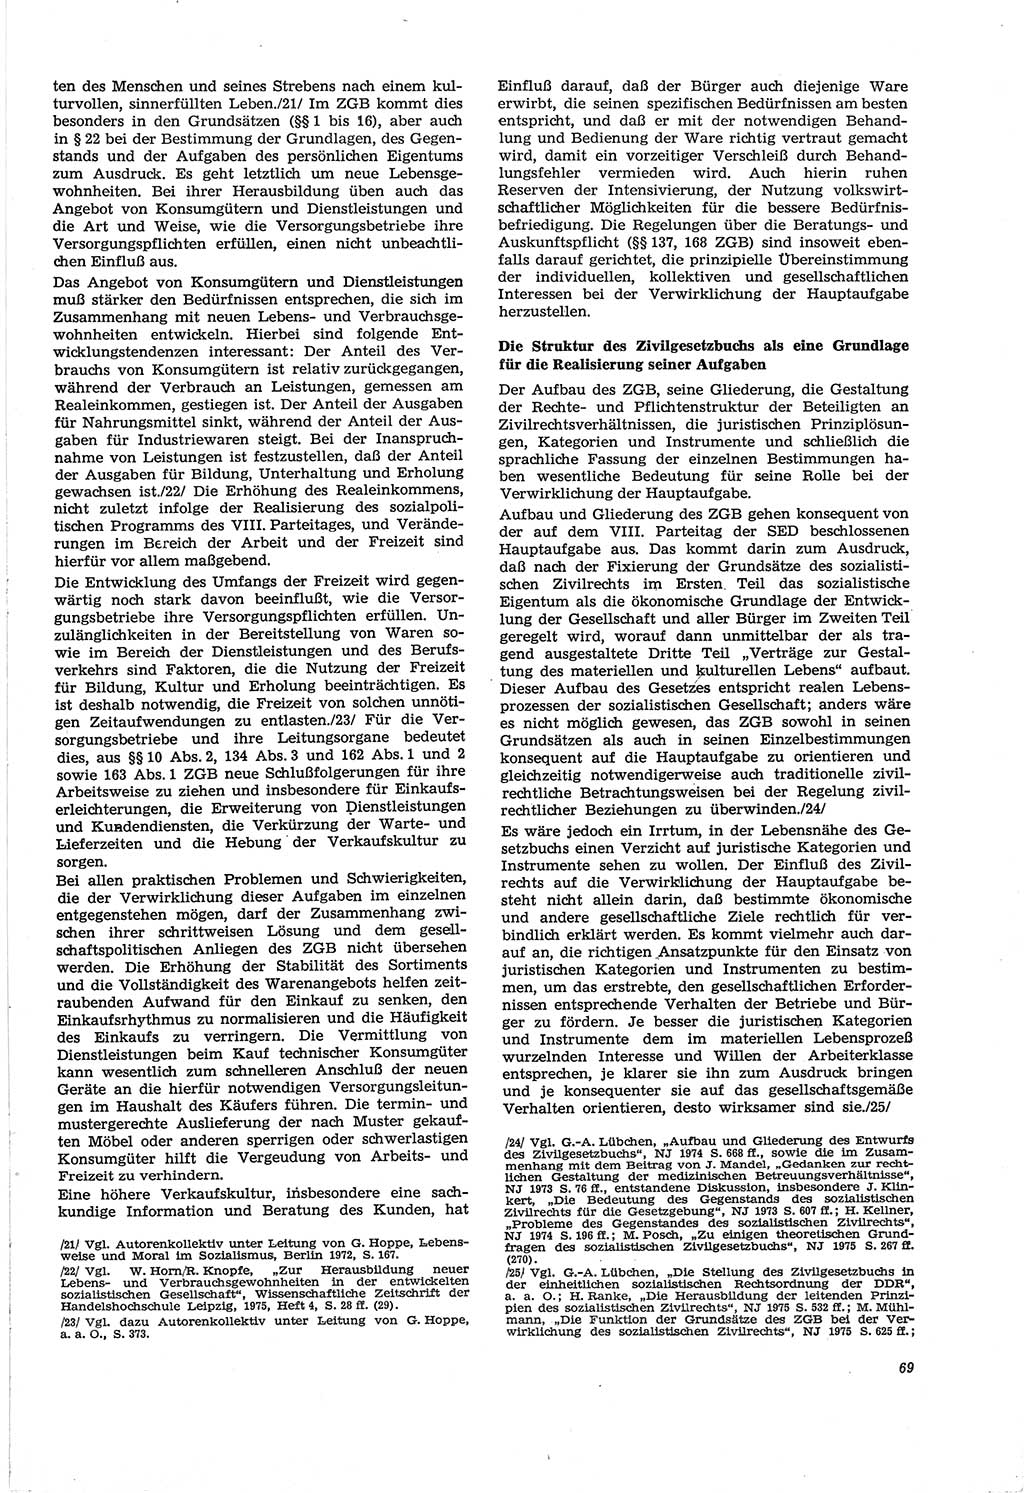 Neue Justiz (NJ), Zeitschrift für Recht und Rechtswissenschaft [Deutsche Demokratische Republik (DDR)], 30. Jahrgang 1976, Seite 69 (NJ DDR 1976, S. 69)